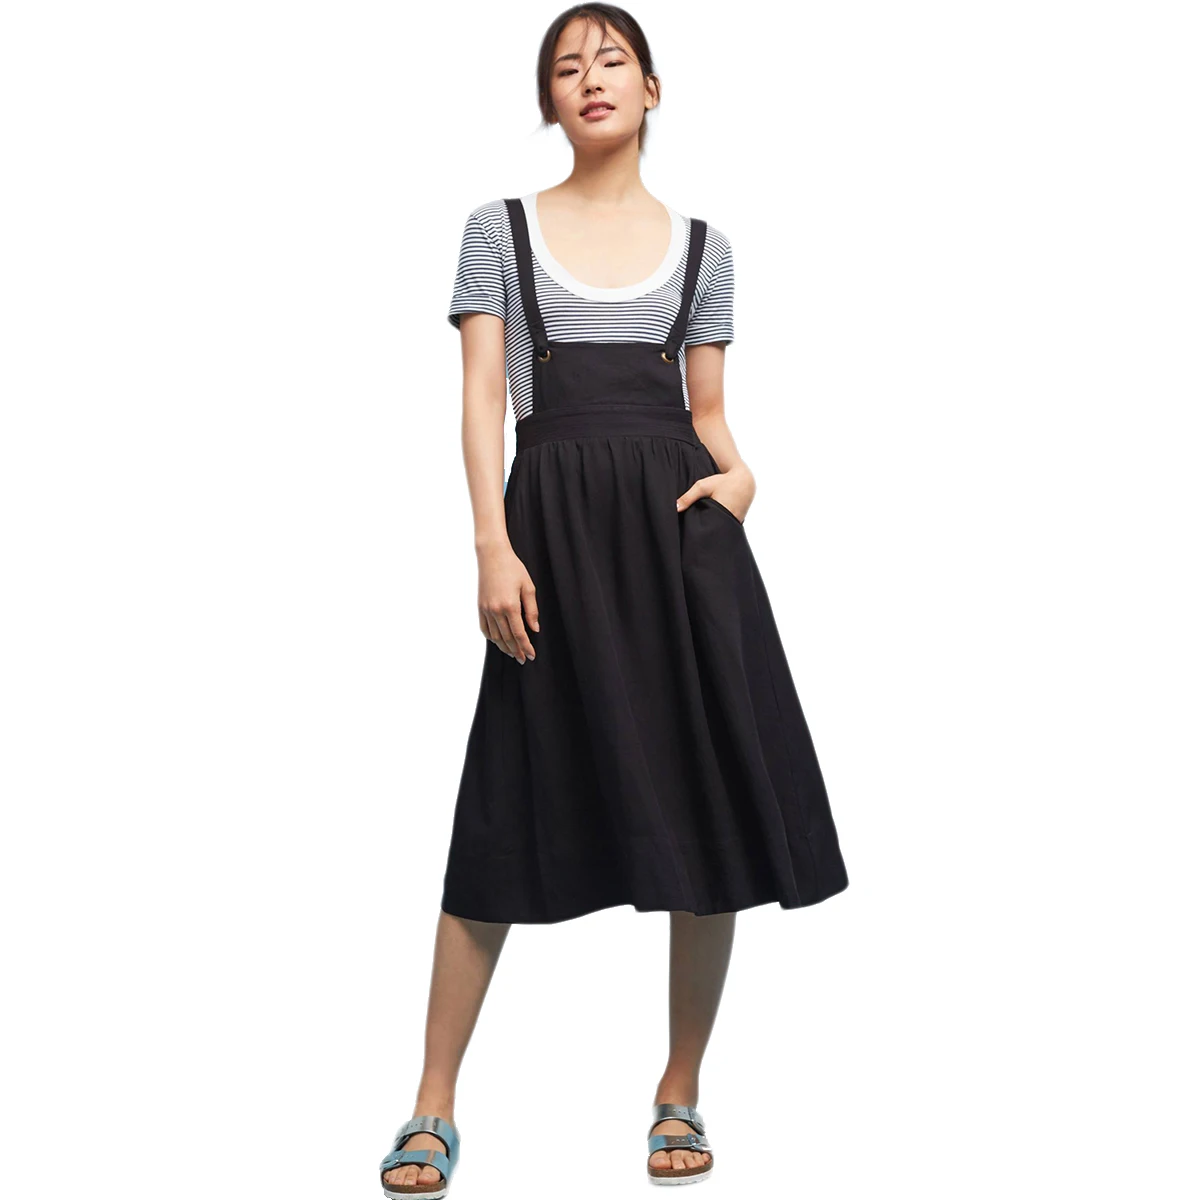 Richlulu Для женщин Сплошной Черный Элегантный дизайн платье на бретелях